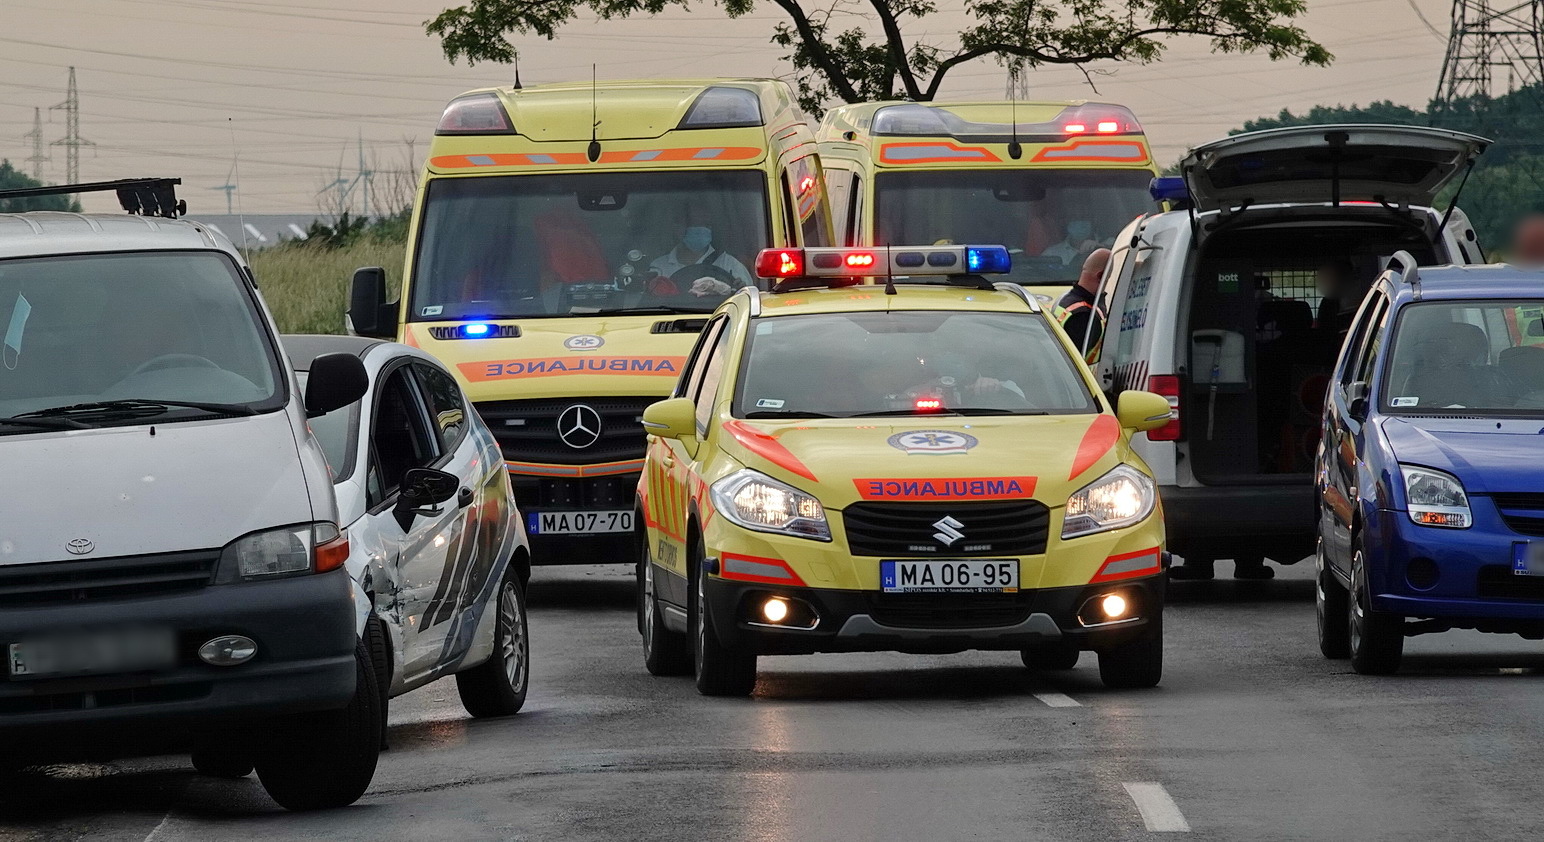 Négy autó ütközött Szombathely közelében - ittas lehetett az okozó